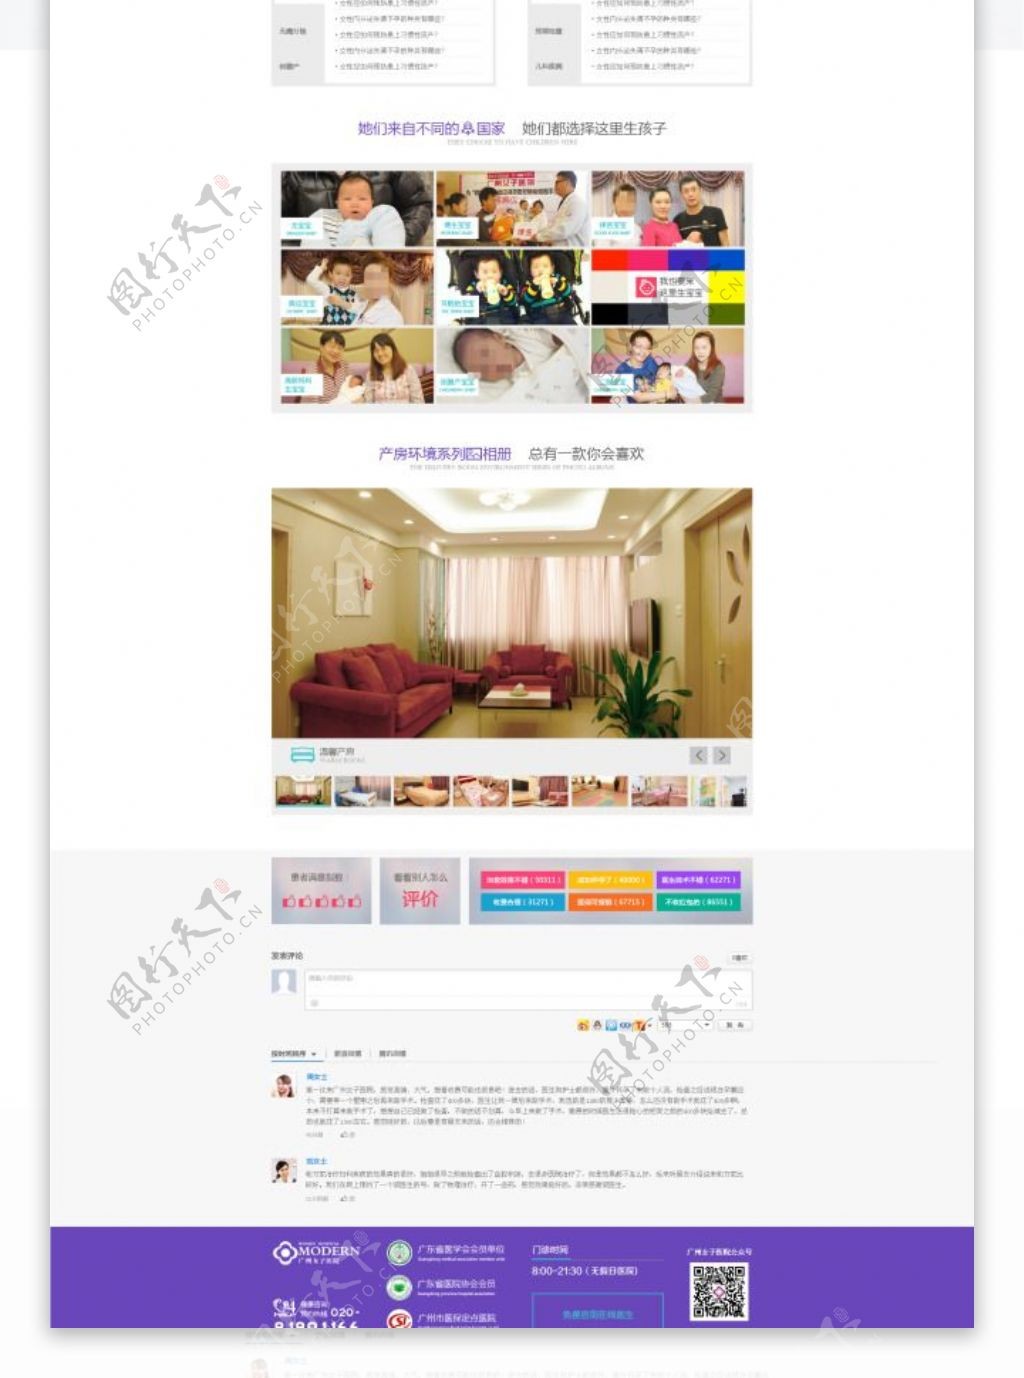 惠州网二级域名产科频道页模板